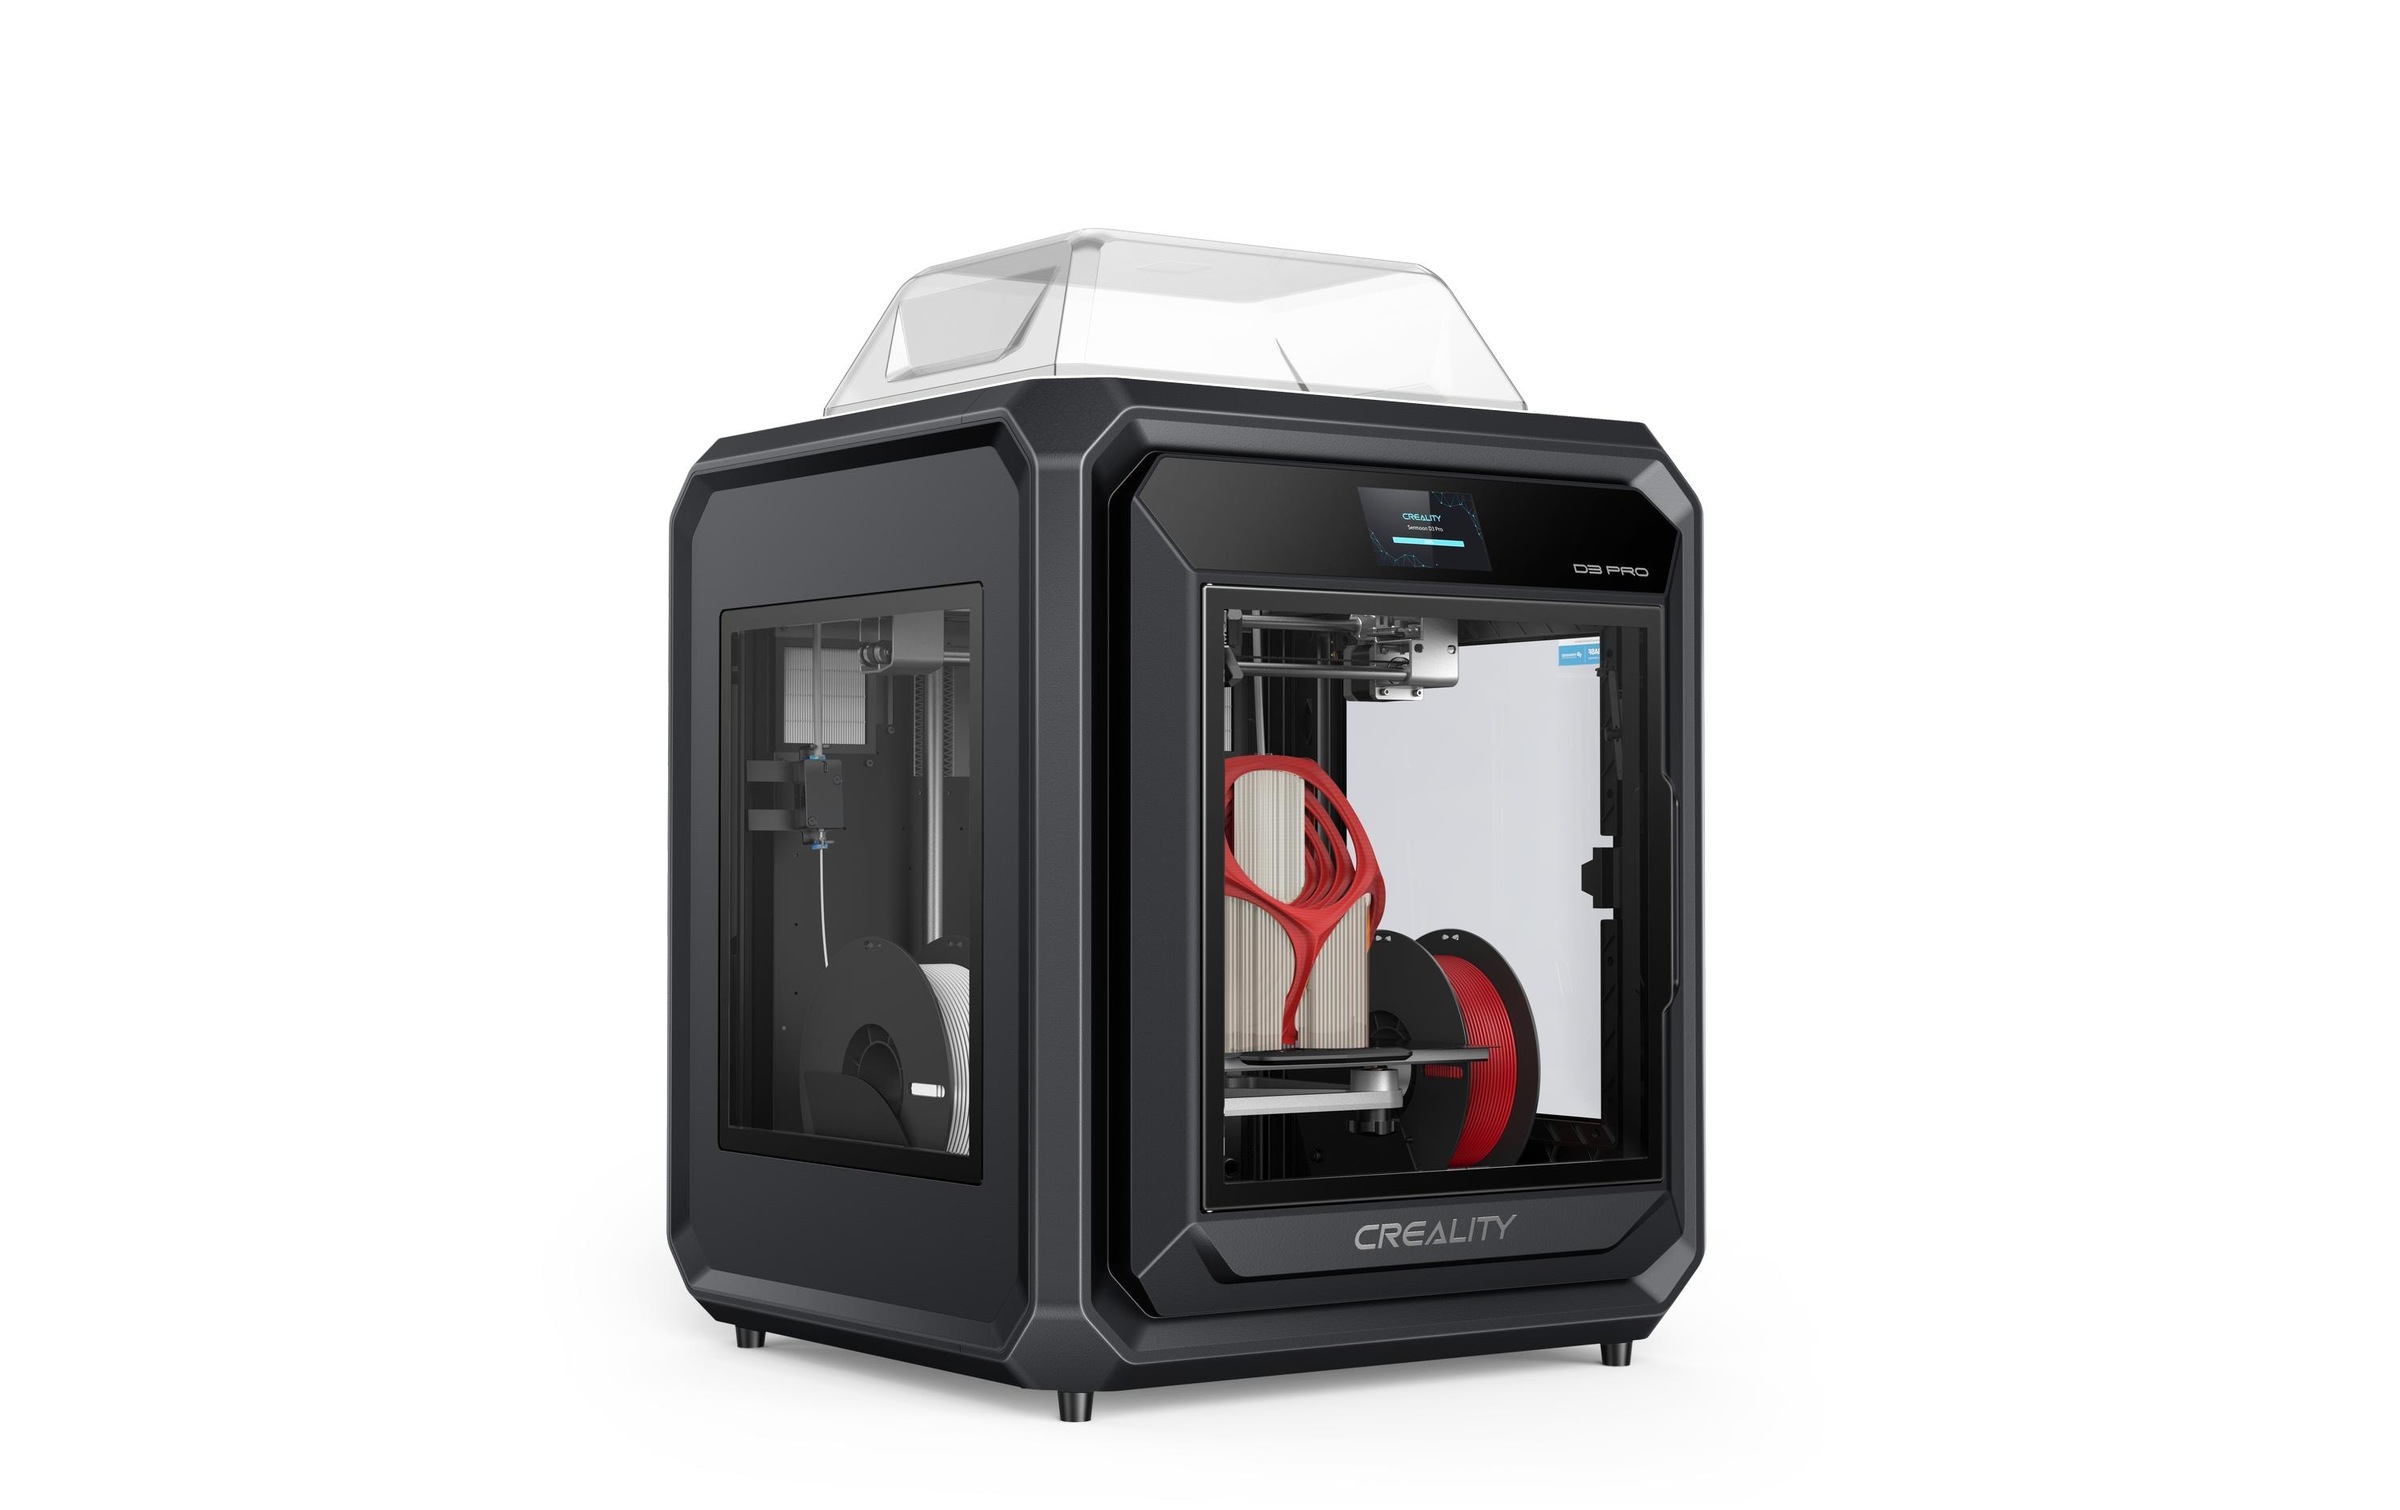 Creality 3D-Drucker »Sermoon D3 Pro«